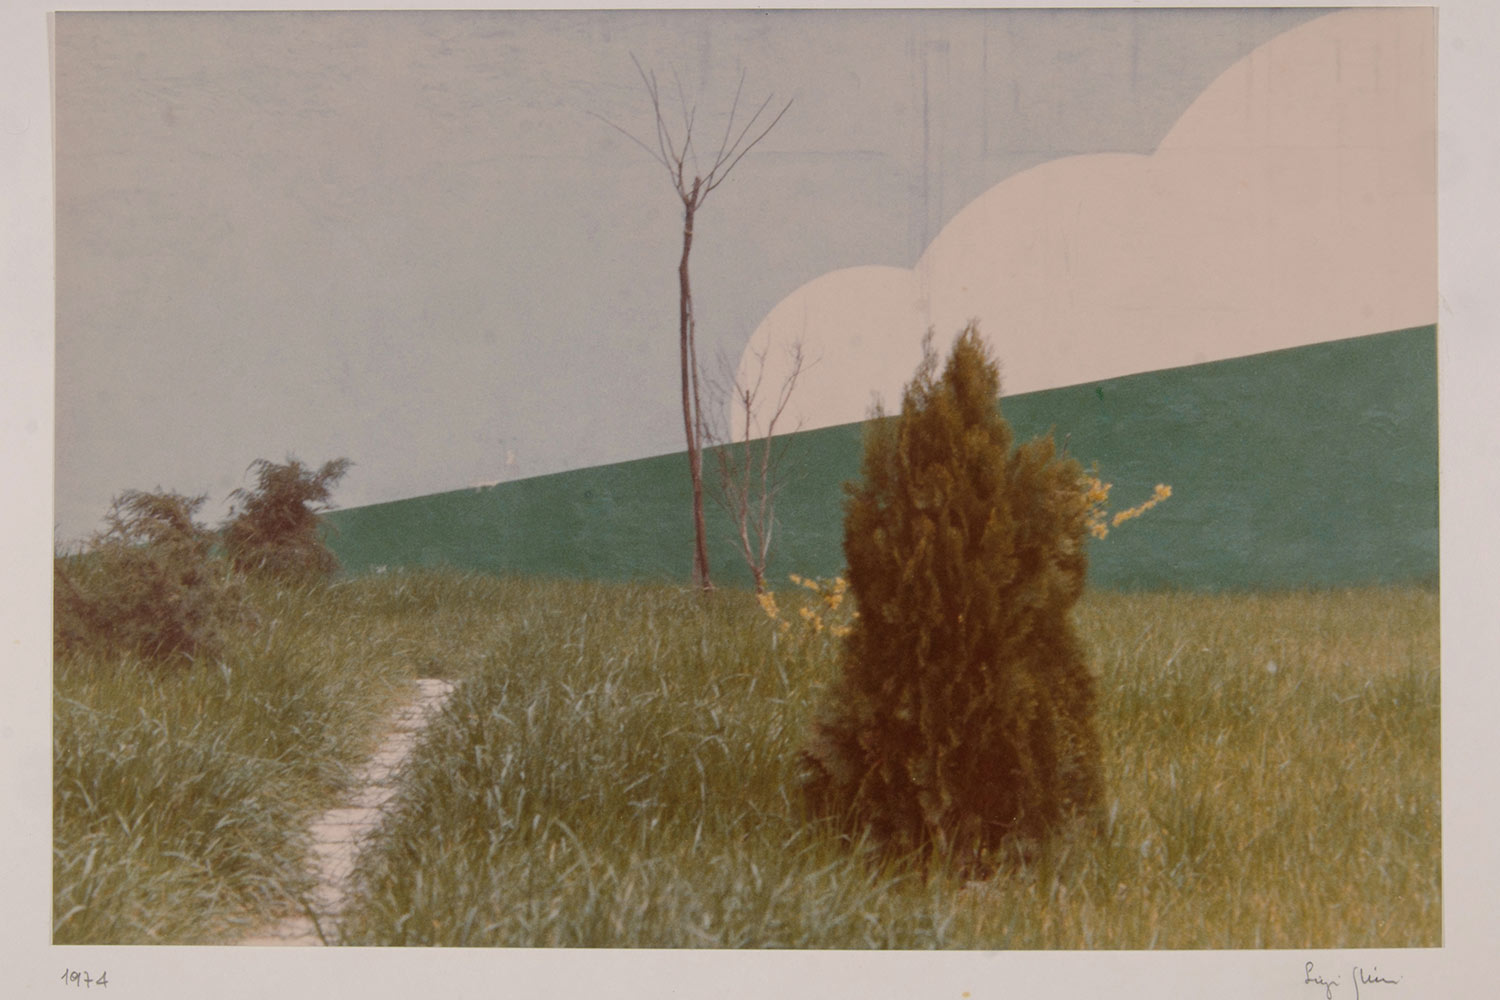 Luigi Ghirri Modena 1973 serie Kodachrome Stampa cromogenica da negativo 19 x 28,5 cm Collezione privata © Eredi Luigi Ghirri